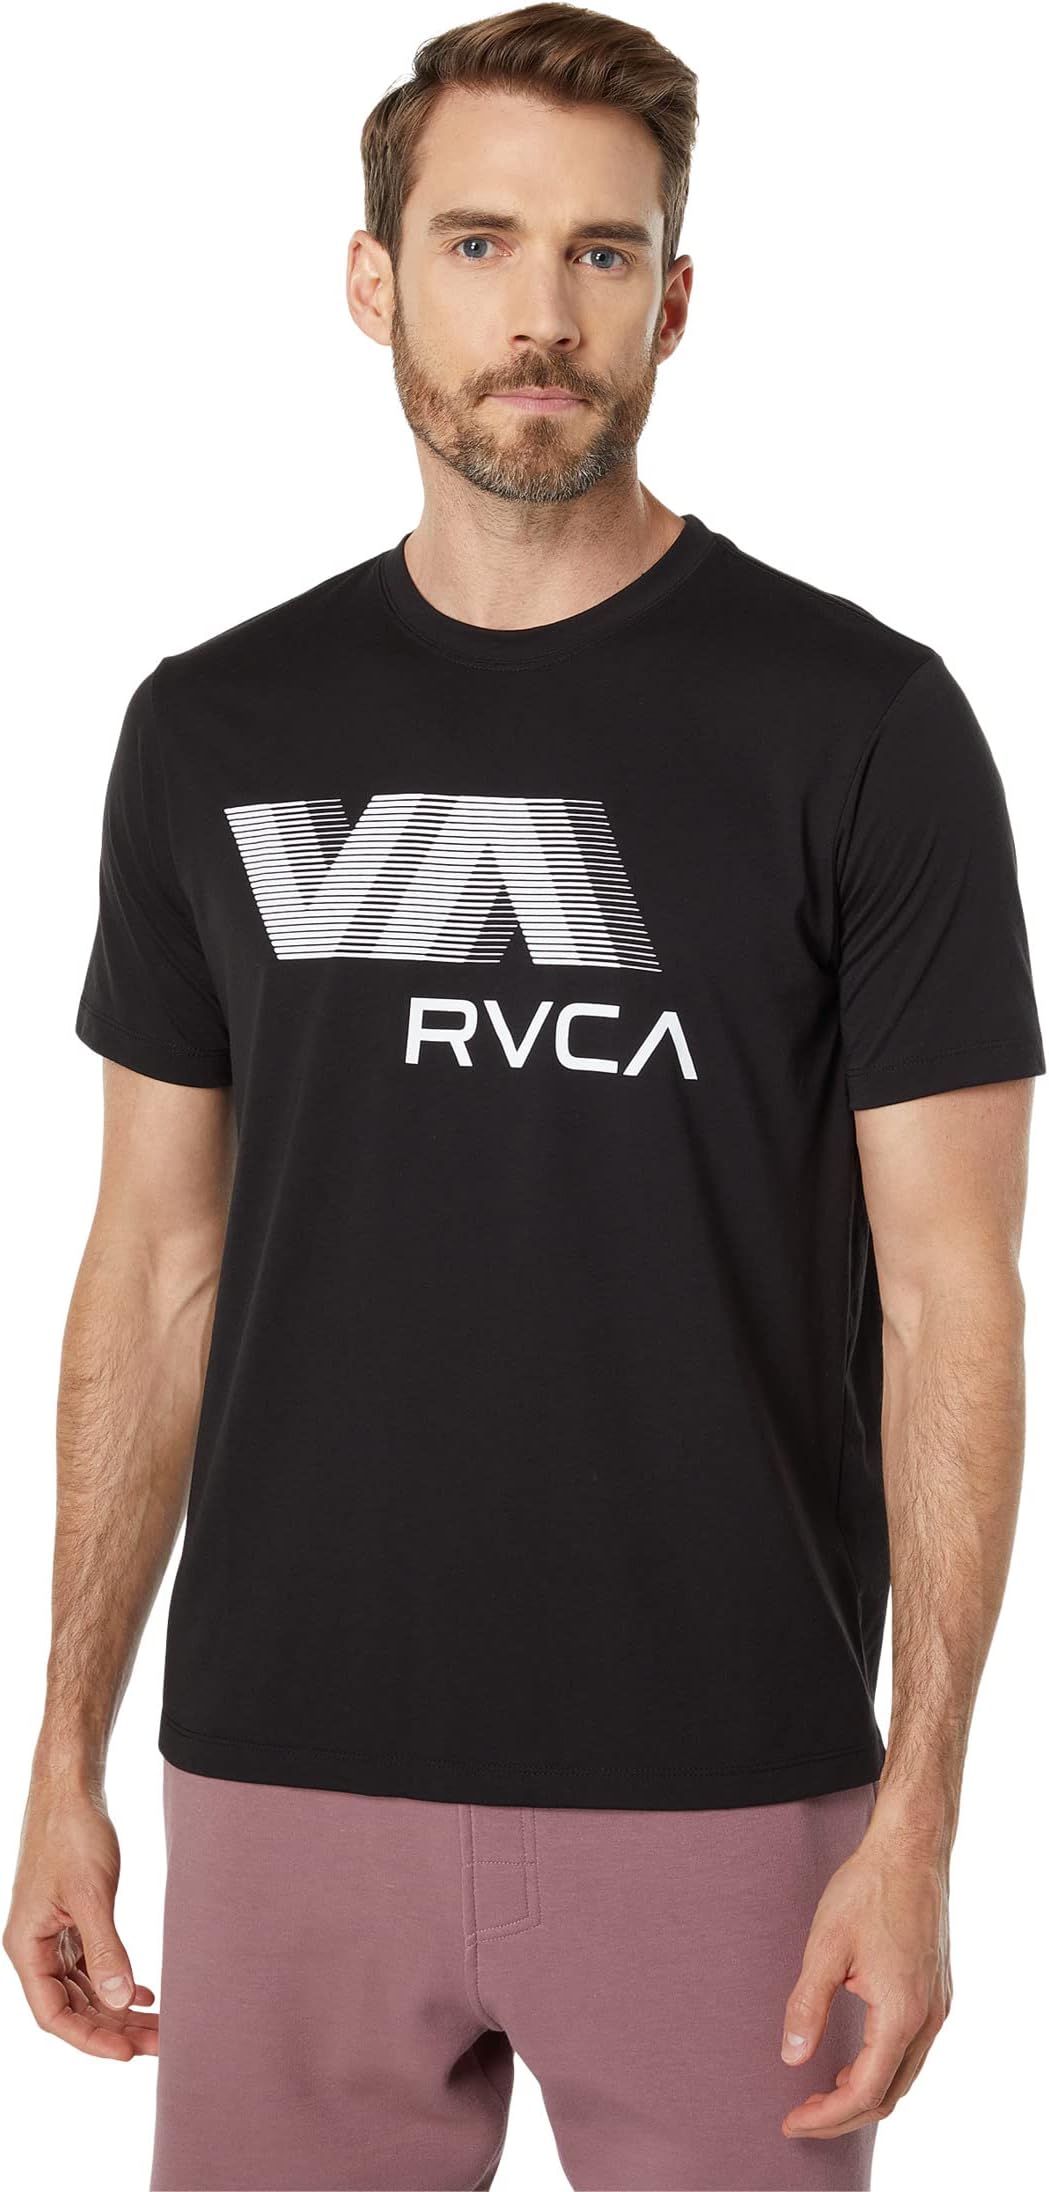 

Футболка VA RVCA Blur S/S, черный